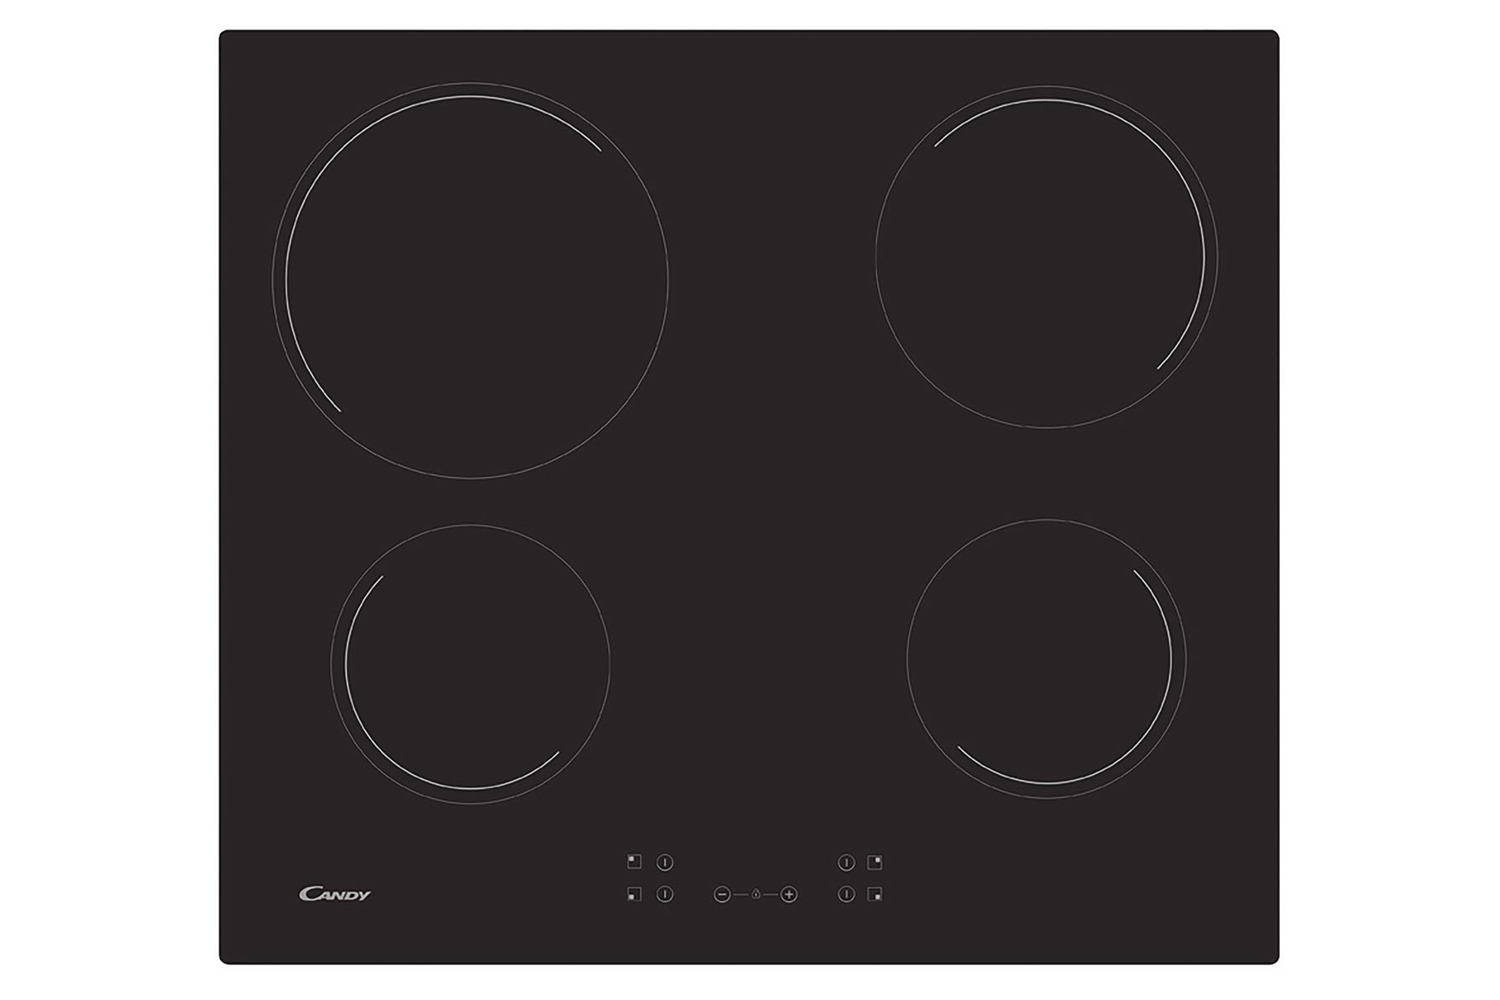 8 X BEKO CREDA TEKA CDA & CANDY Cooker Oven Hob Black CONTROL KNOBS & ADAPTORS 